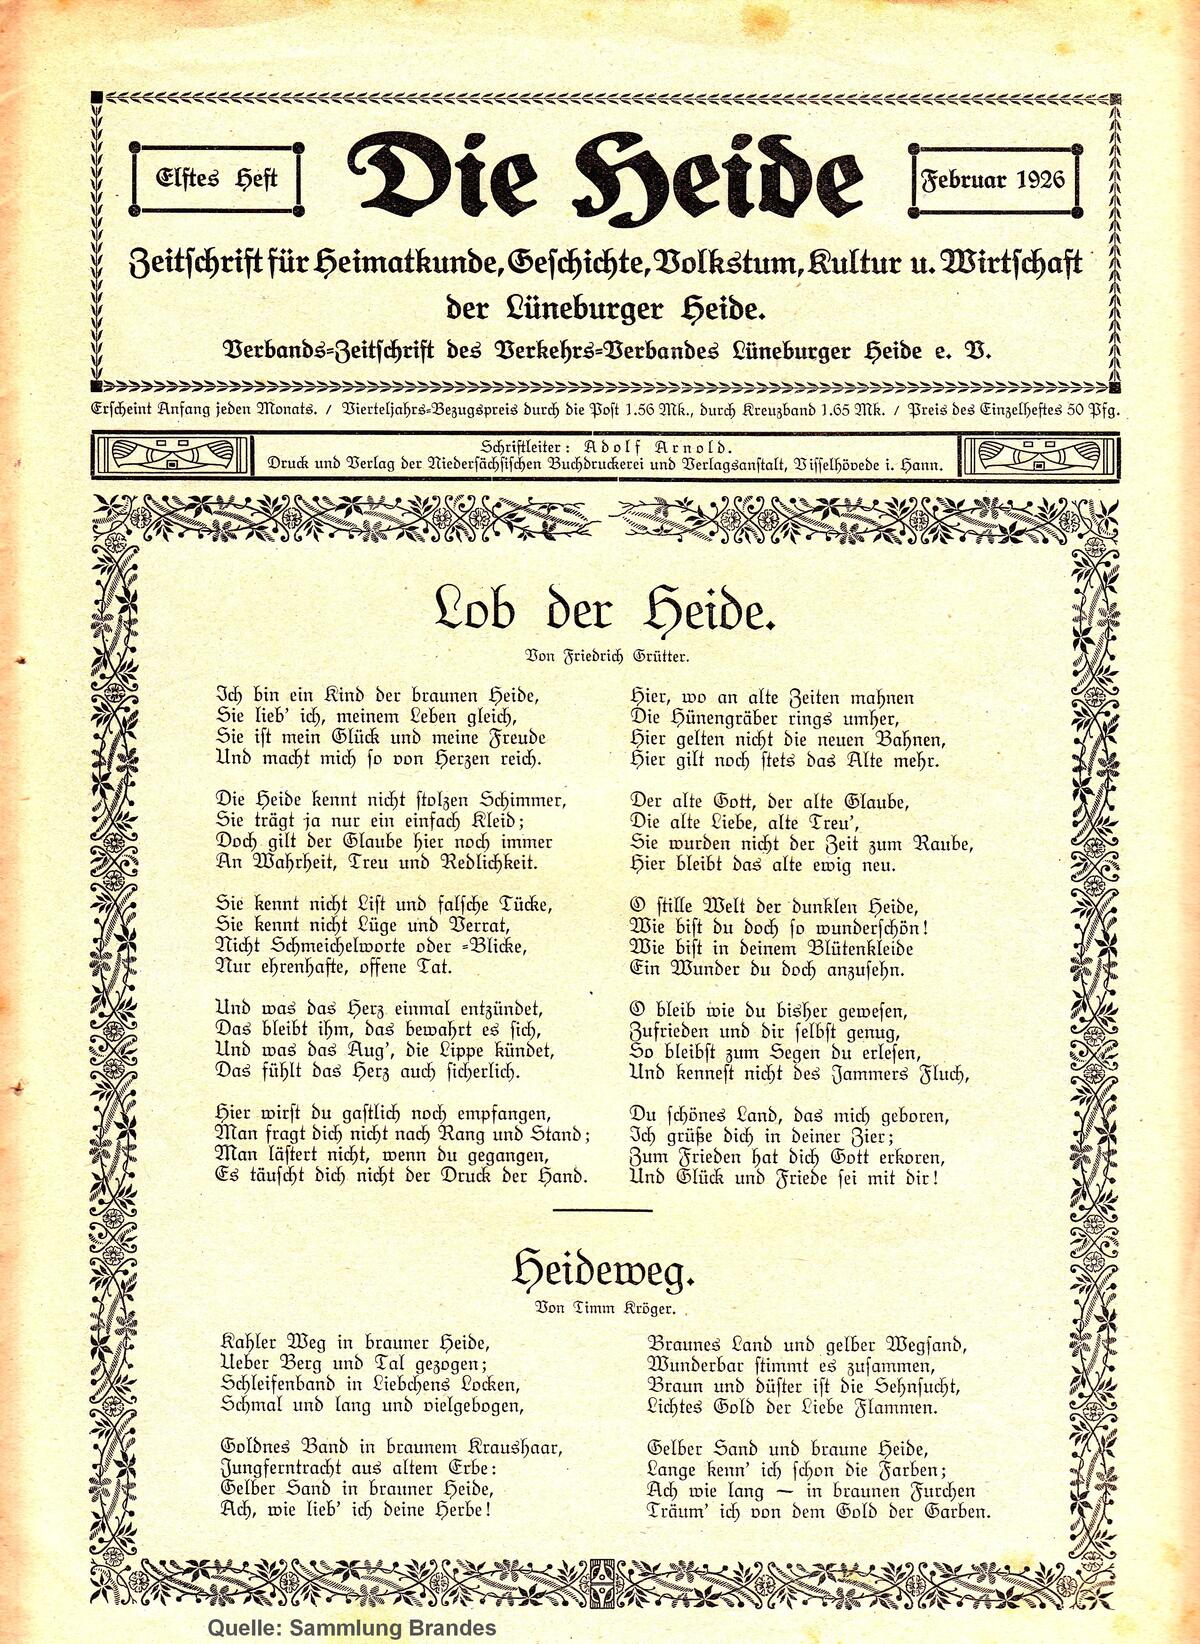 Bild vergrößern: Titelseite der Zeitschrift "Die Heide", Heft 11 aus dem Februar 1926